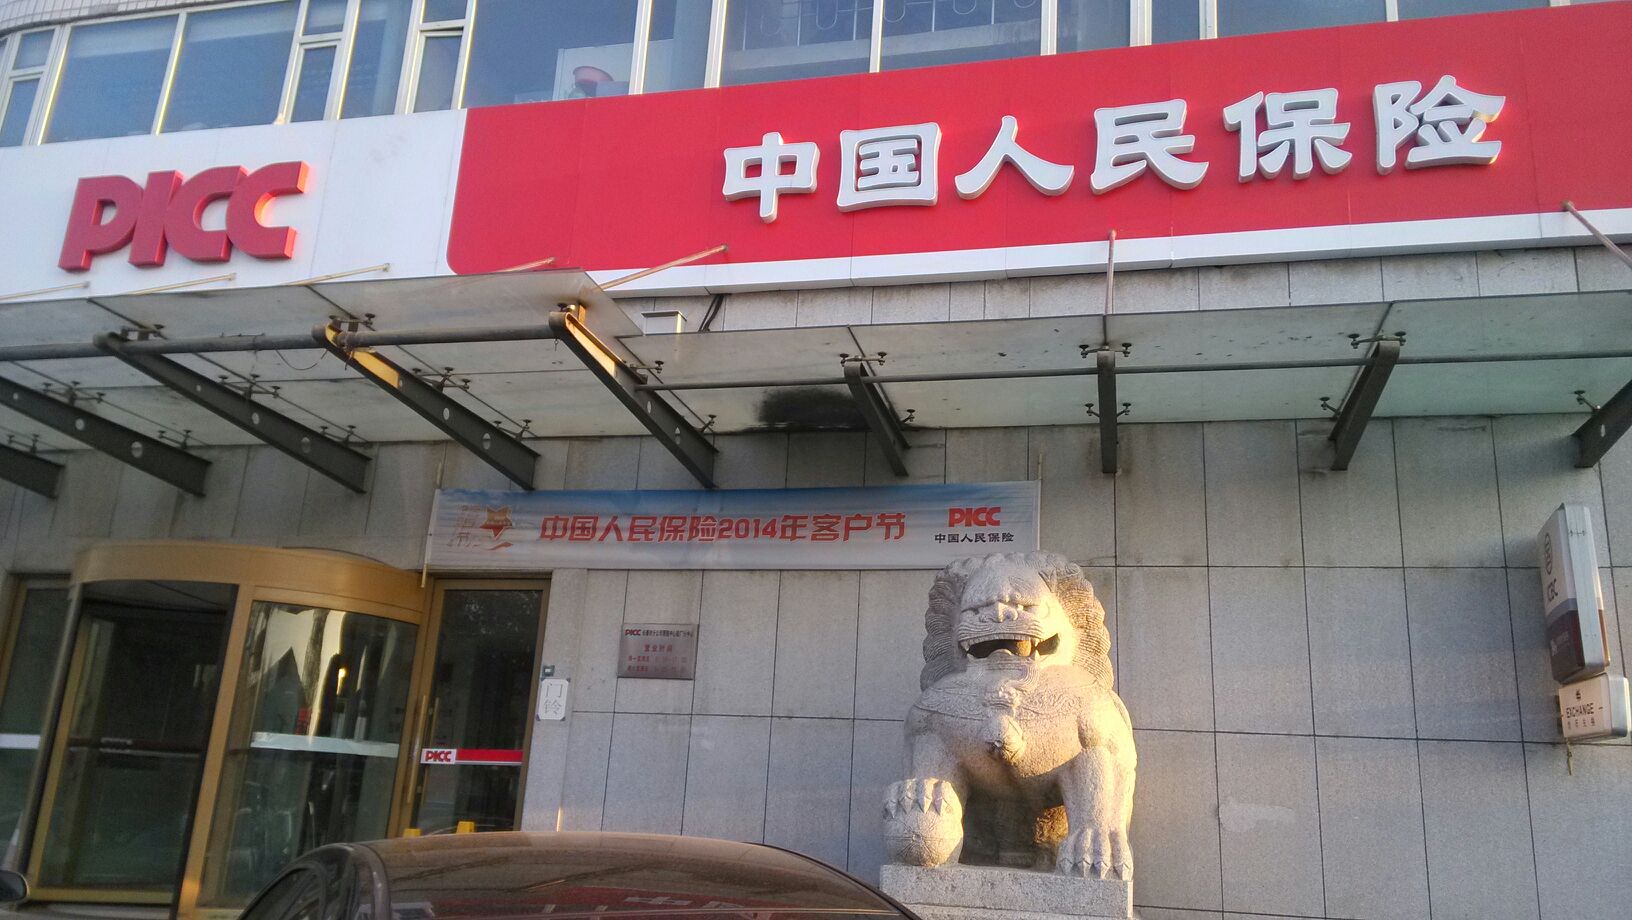 中國人民保險(長春市駐一汽集團支公司)